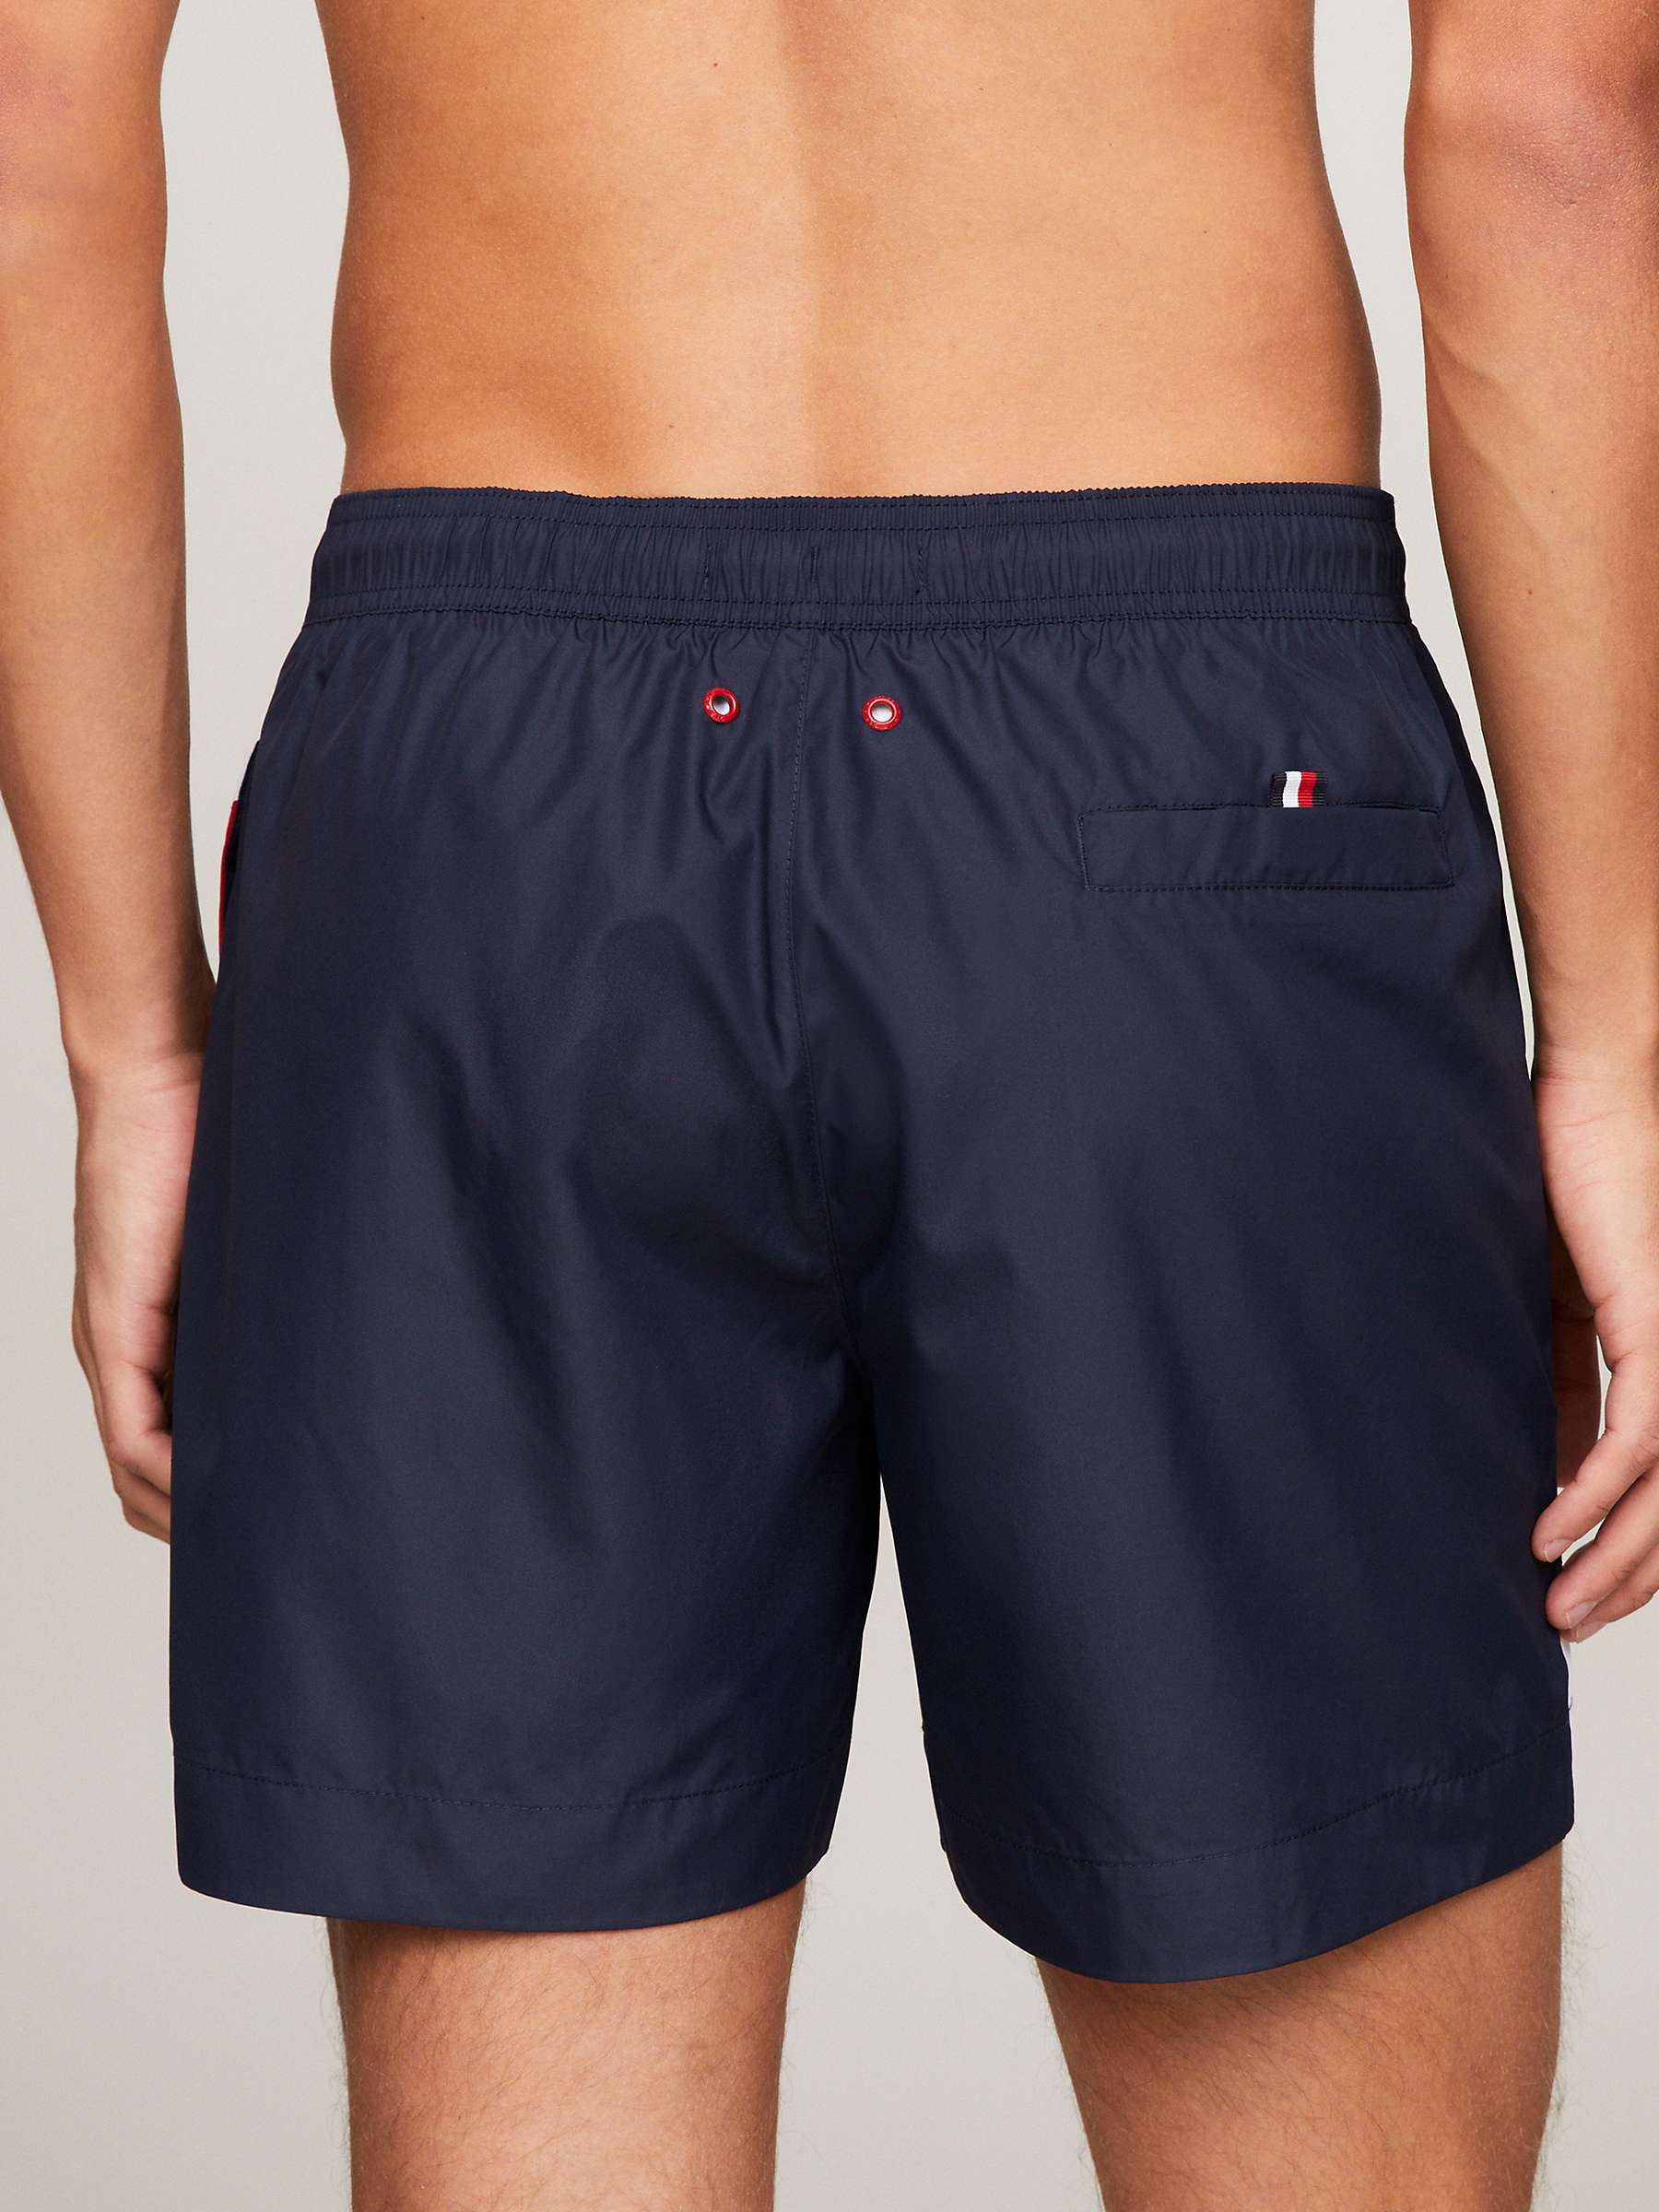 Buy Tommy Hilfiger Flag Swim Shorts, Blue/Multi Online at johnlewis.com